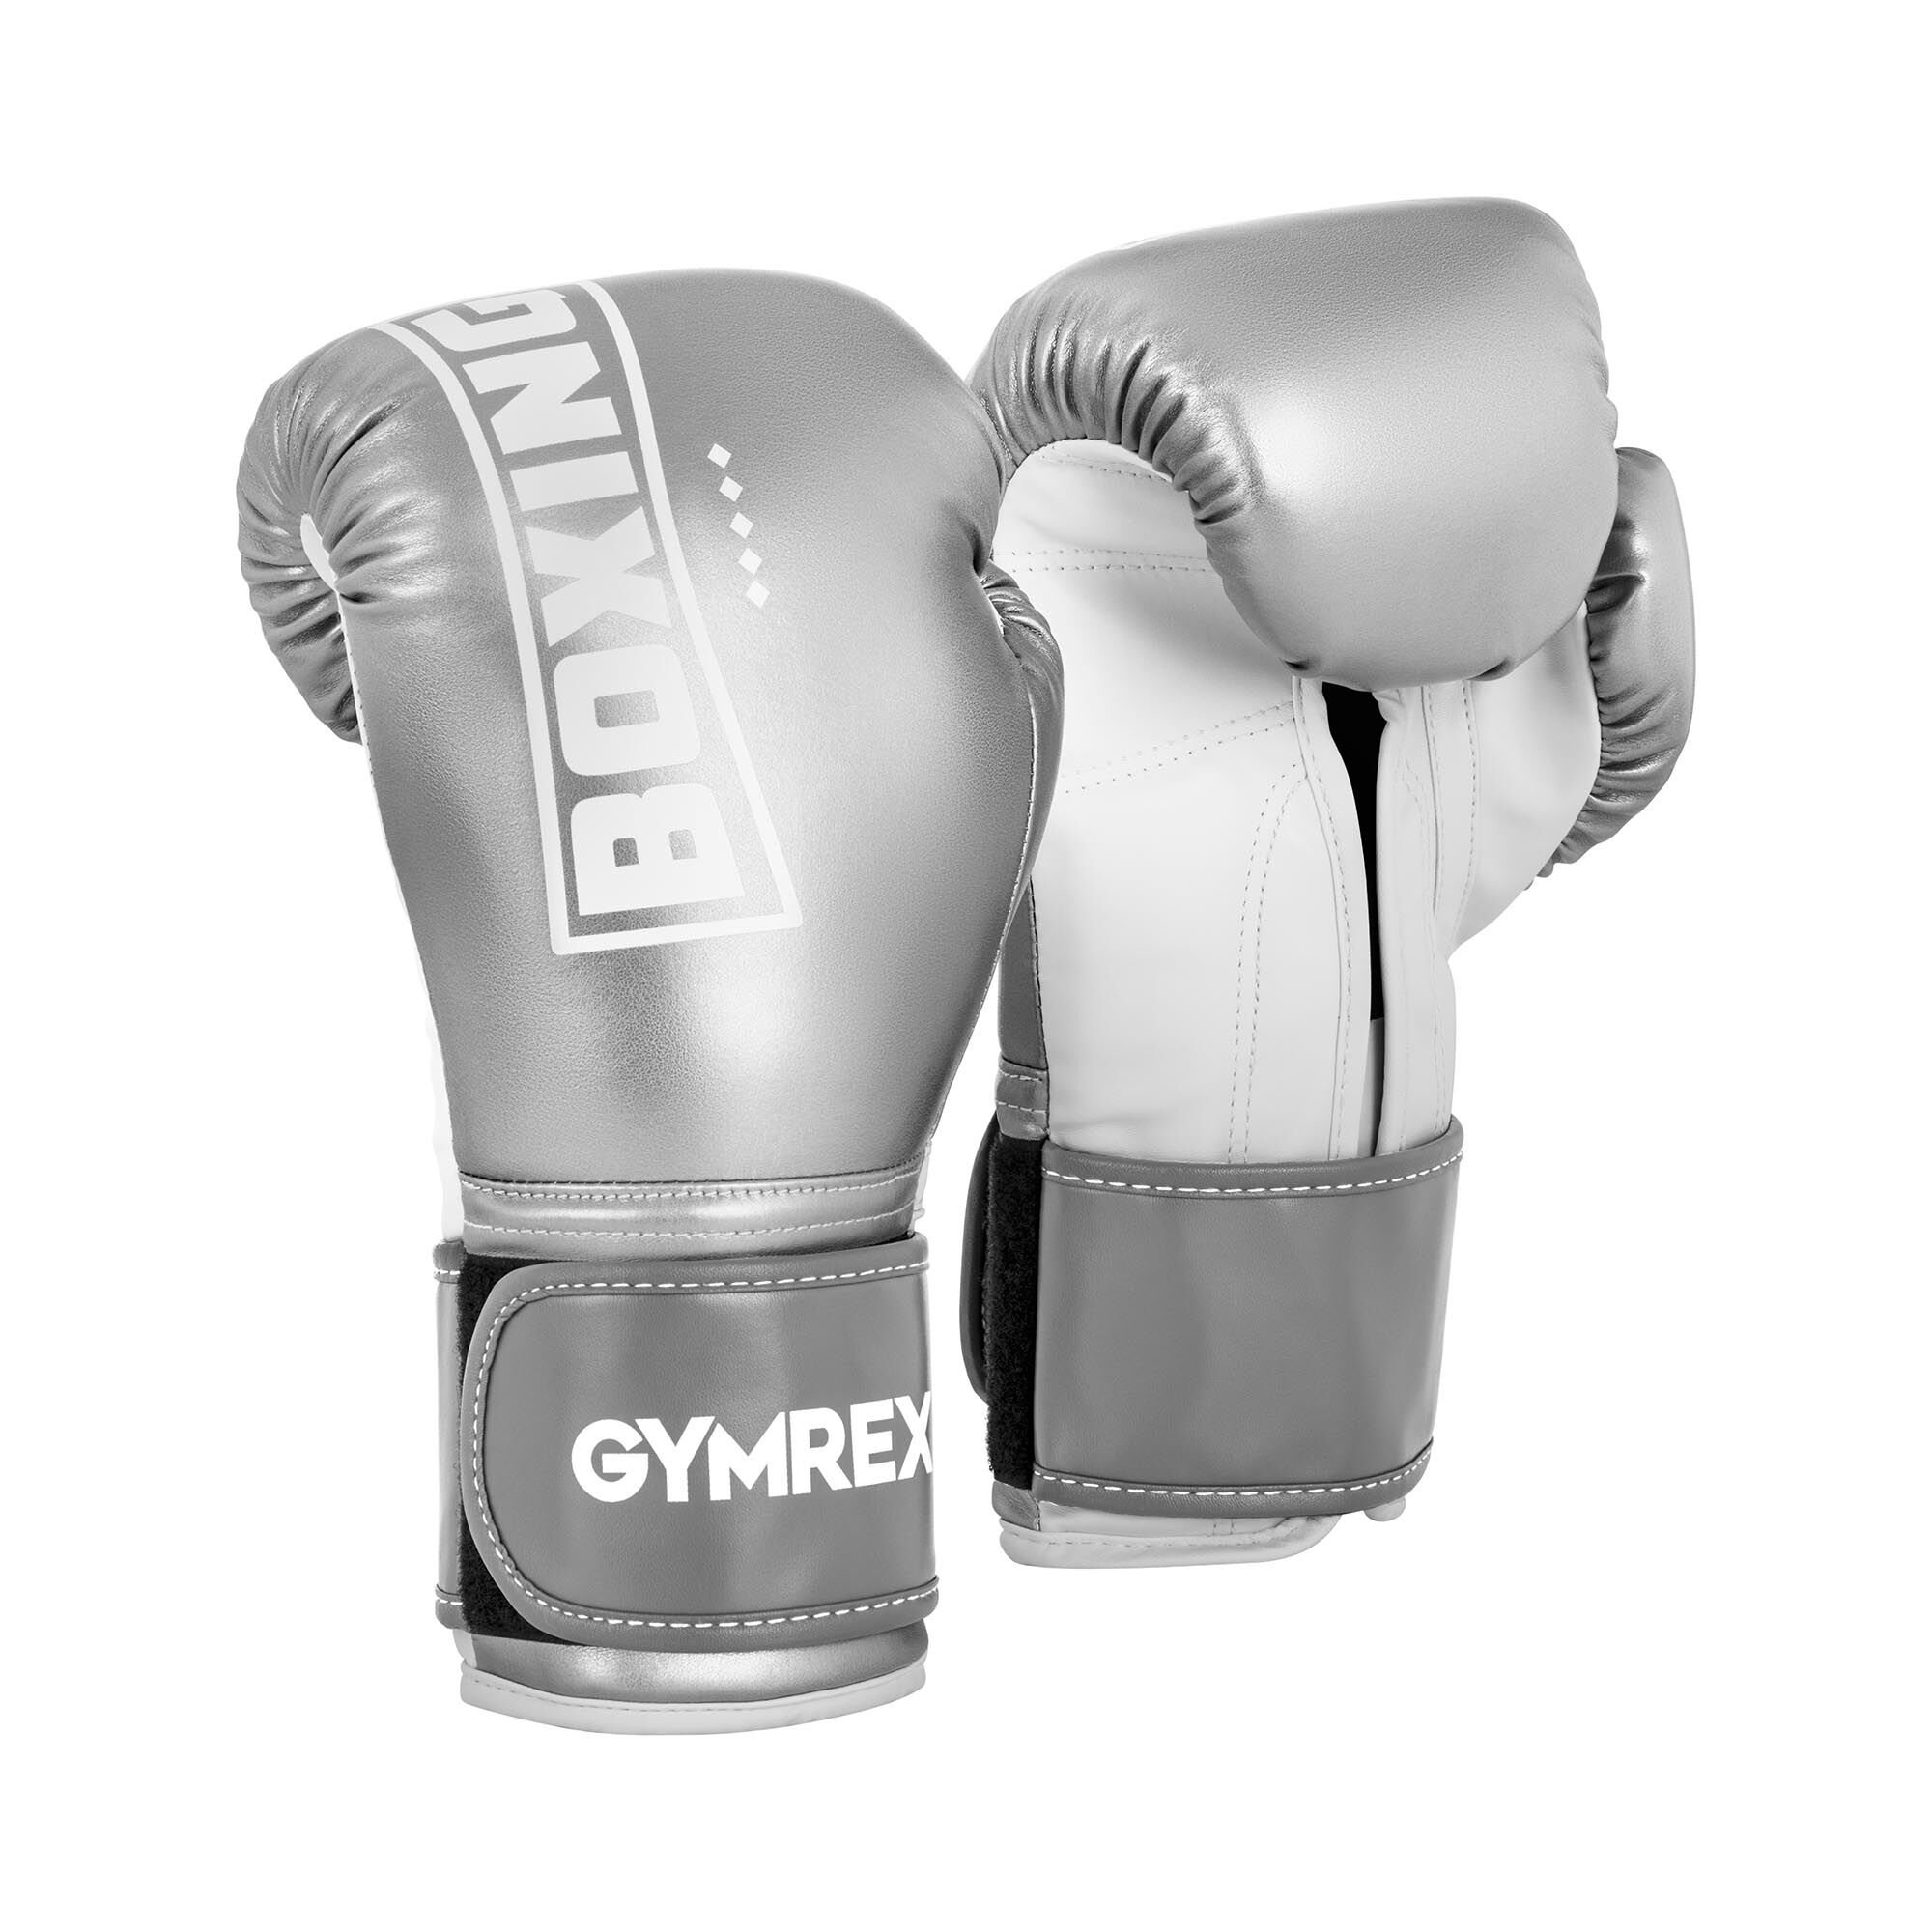 Gymrex Boxerské rukavice - 12 oz - kovově stříbrné a bílé GR-BG 12BP